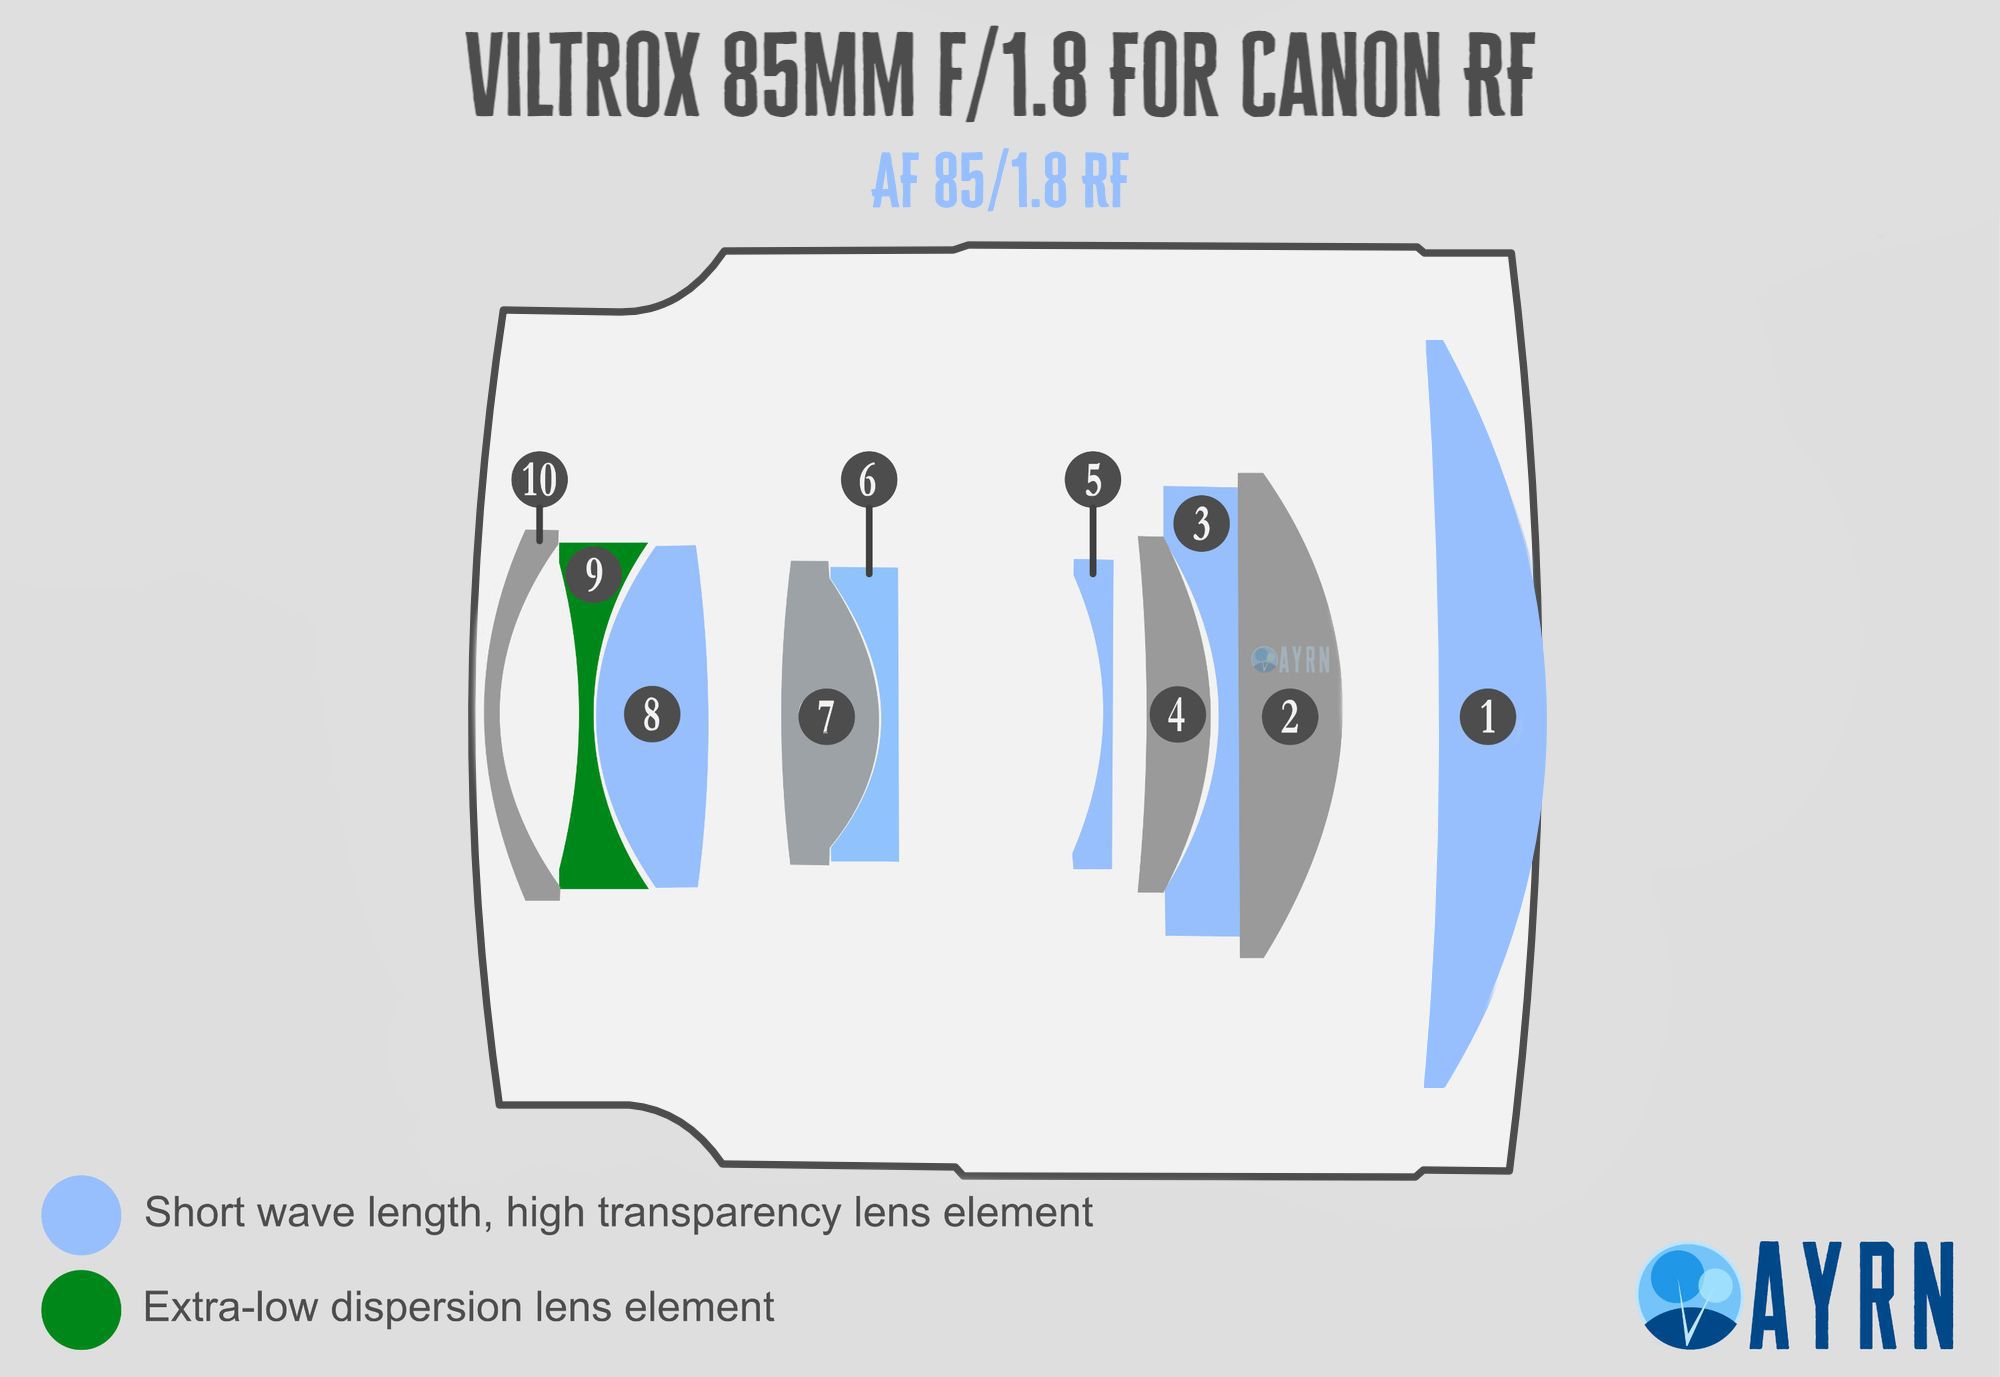 Viltrox 85mm f/1.8 RF Canon Optical Formula Chart